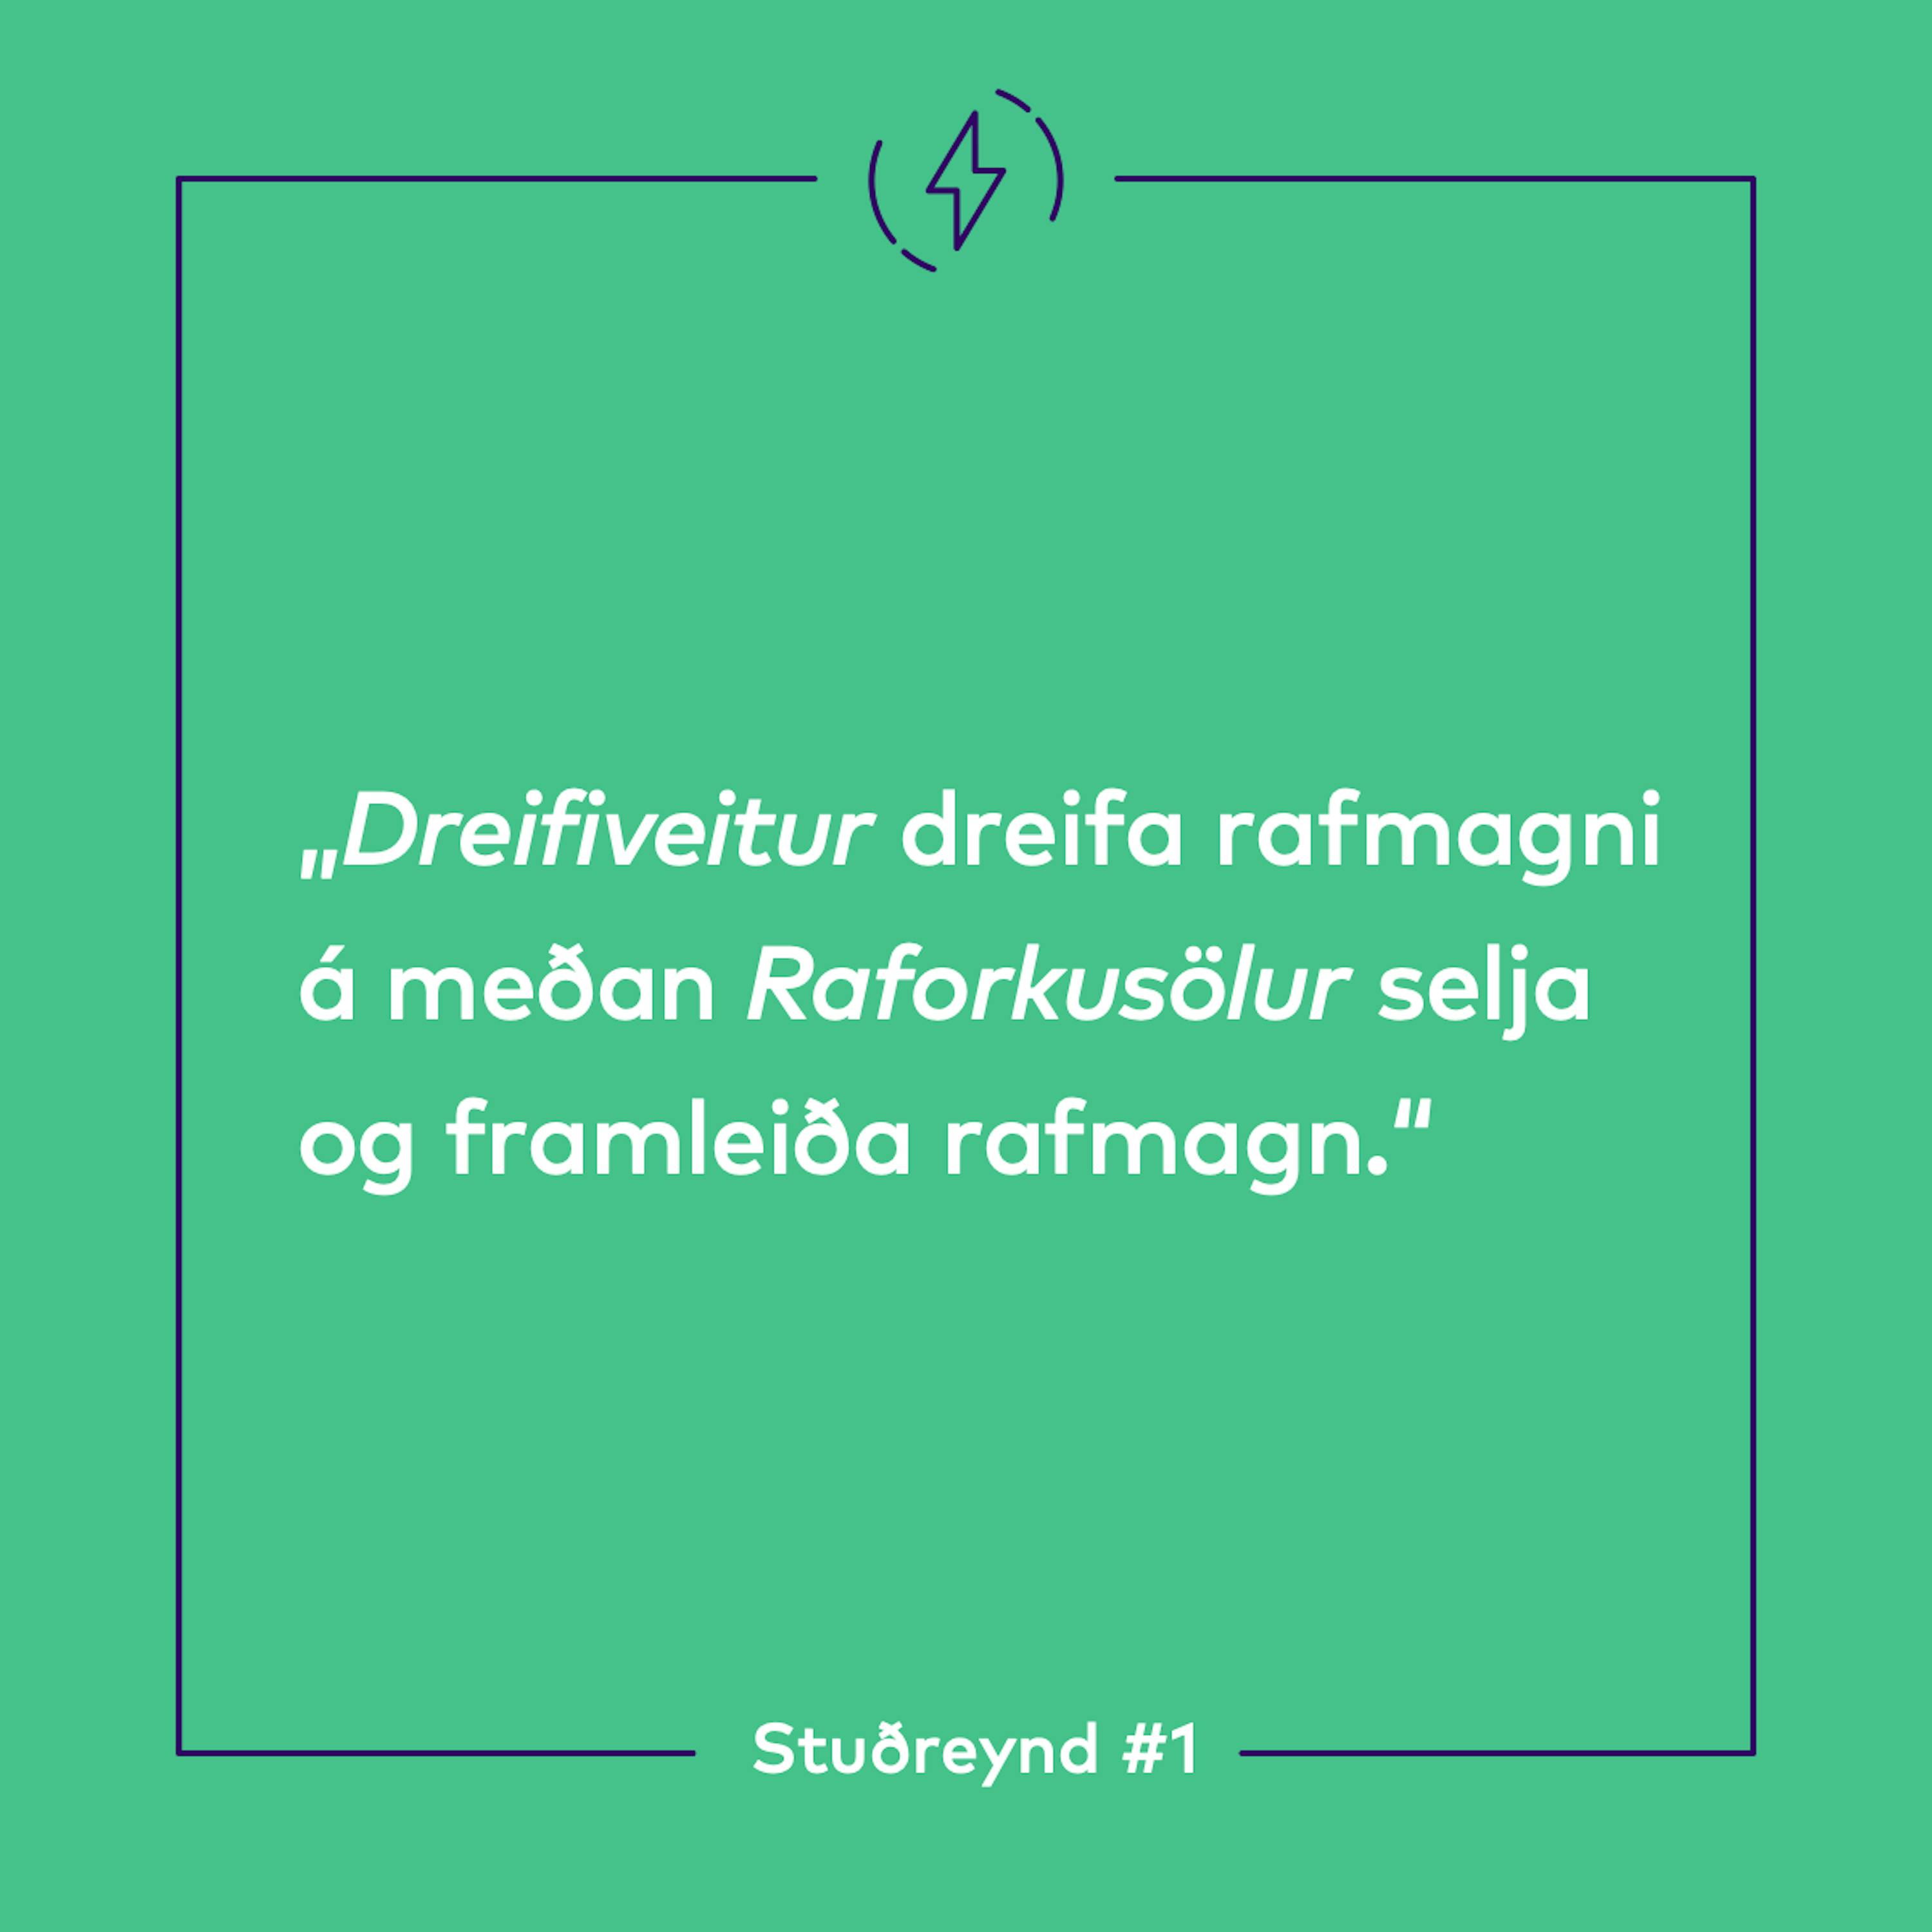 Stuðreyndir - fræðsluefni frá Orkusölunni